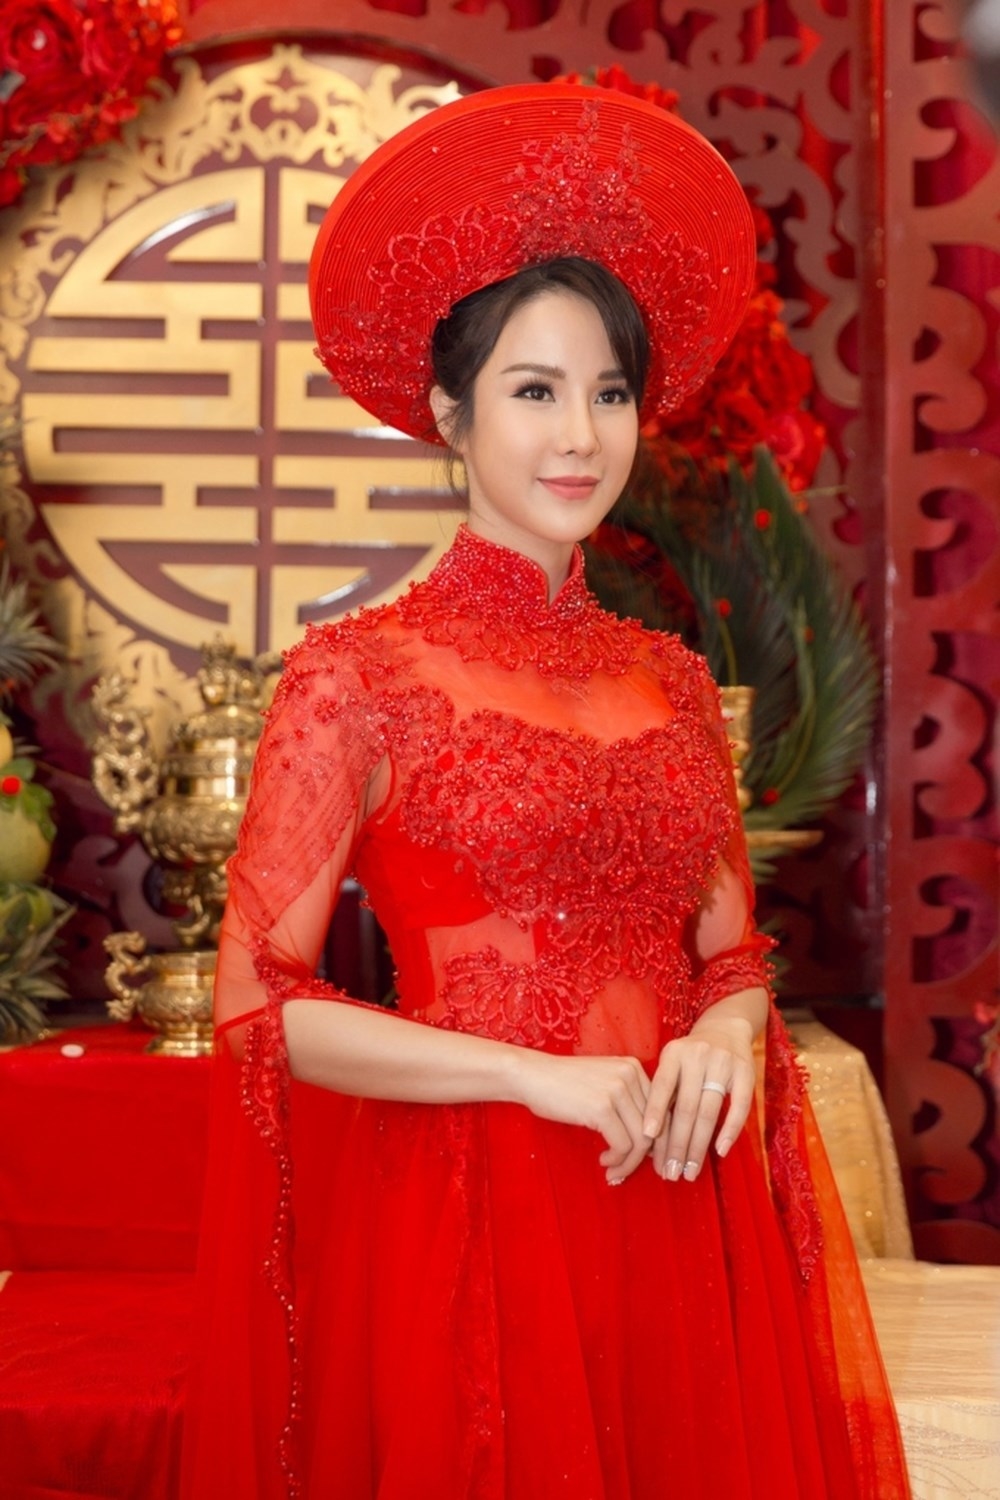 
Hồi tháng 5 vừa qua, Diệp Lâm Anh cũng chính thức "theo chồng về dinh" khi diện áo dài đỏ phom dáng lạ mắt với phần tay xẻ rất ấn tượng.